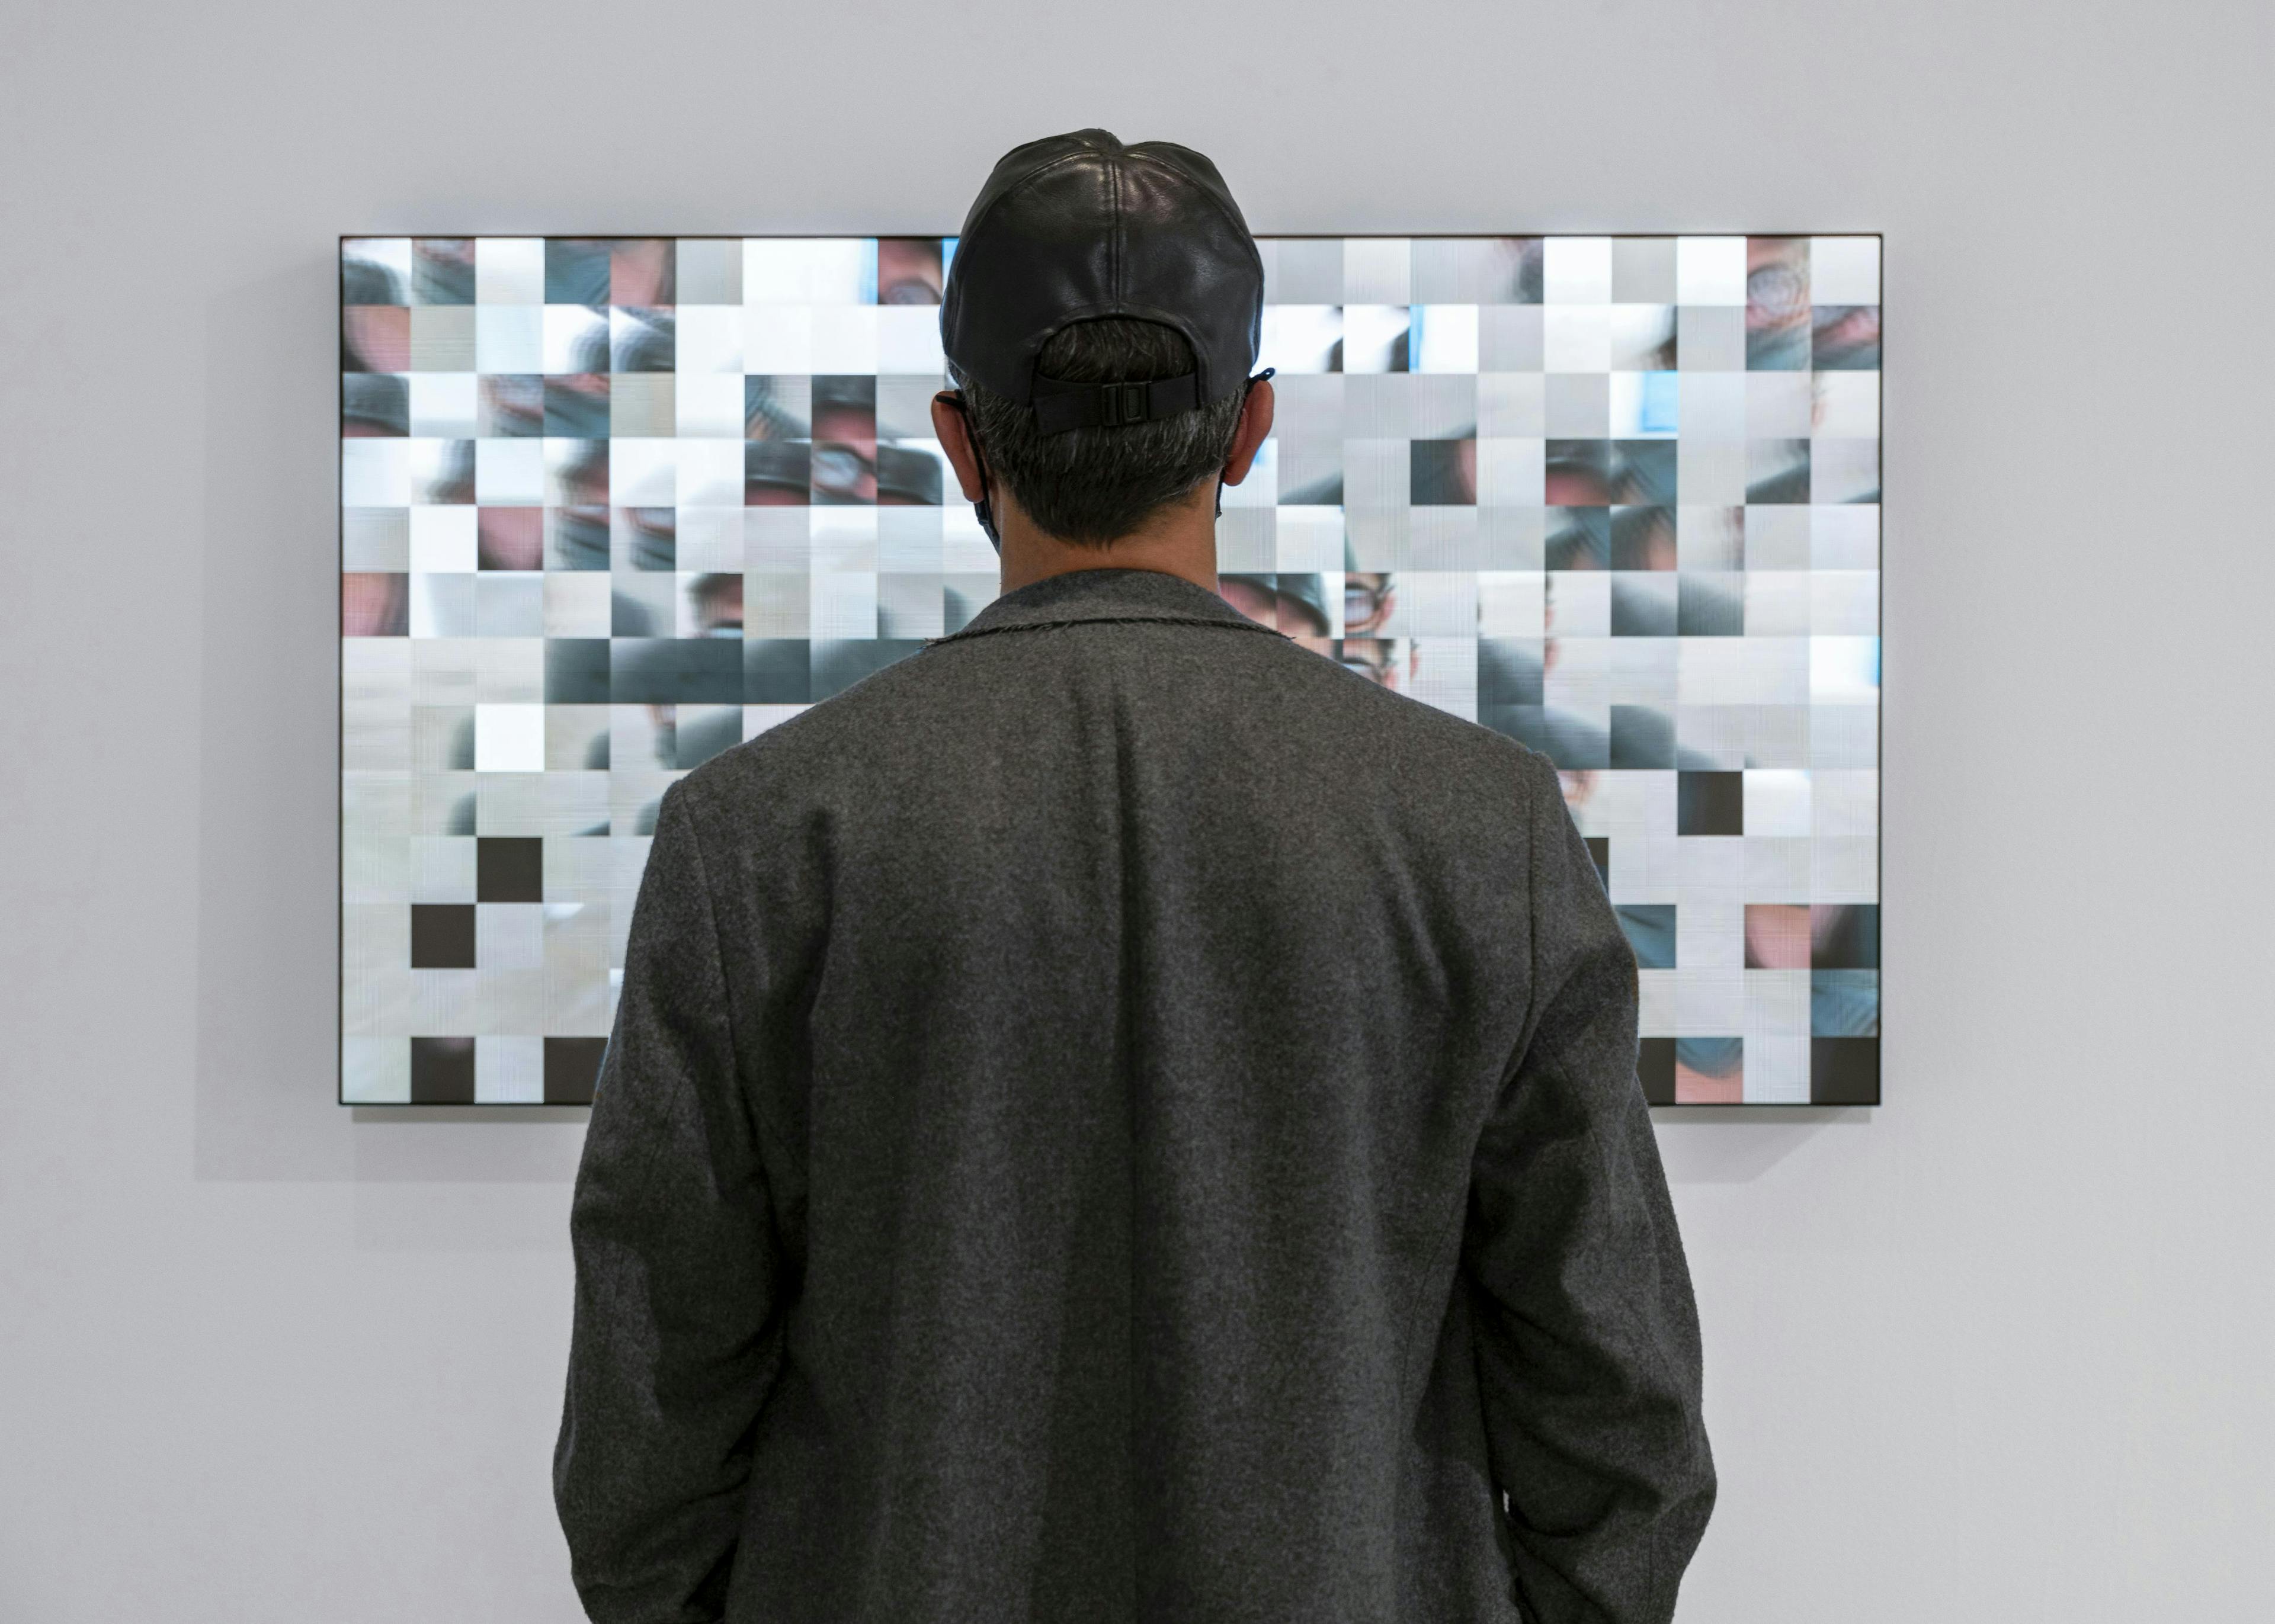 Luma Canvas at Bitforms Gallery Exhibition featuring Rafael Lozano-Hemmer